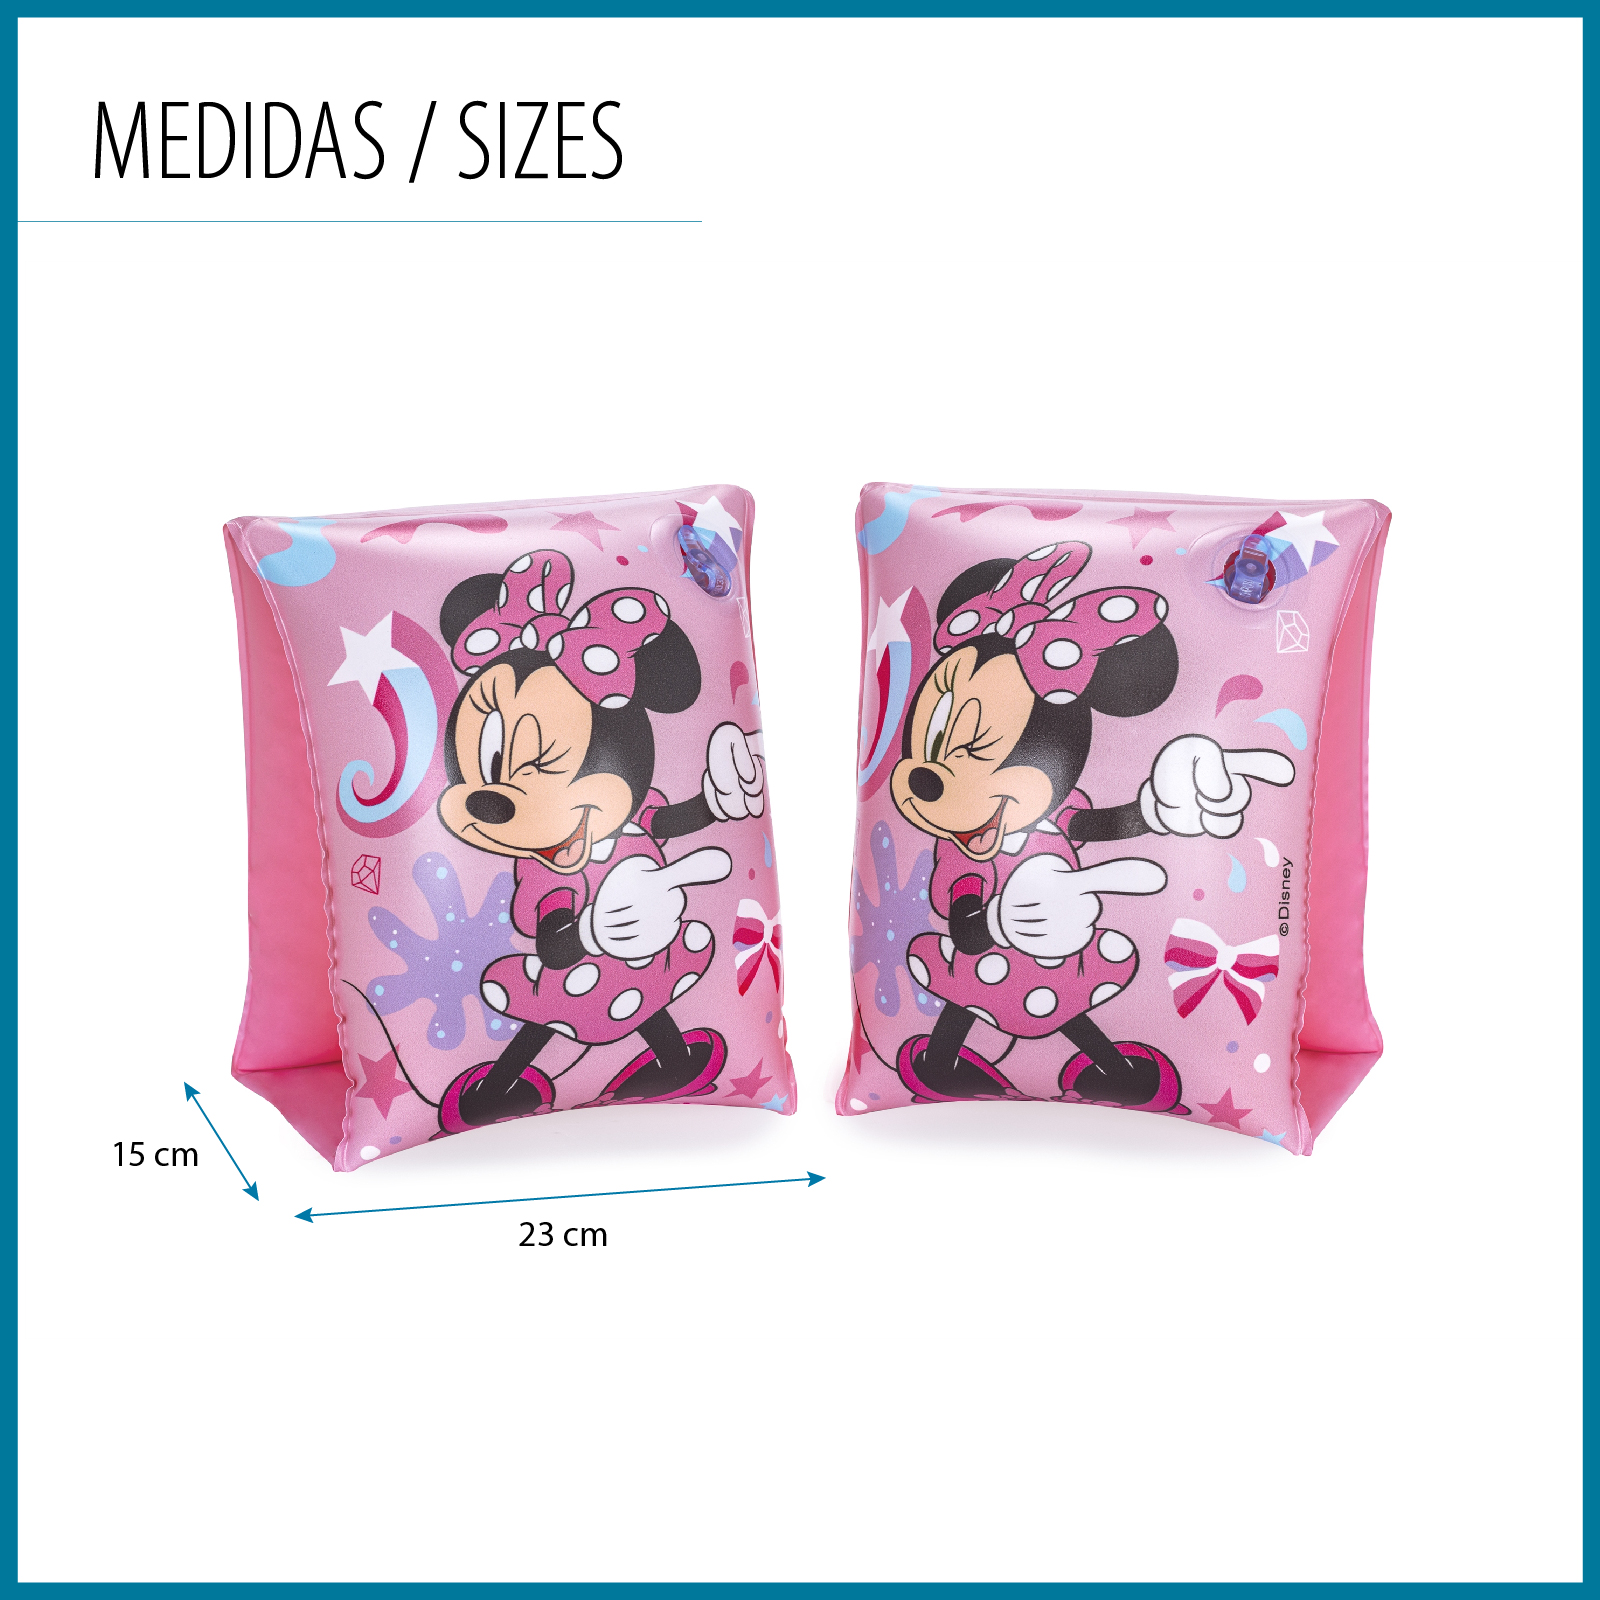 Manguitos Hinchables Para Niños De 3 A 6 Años Bestway 17x12 Cm Diseño De Minnie Mouse Doble Cámara